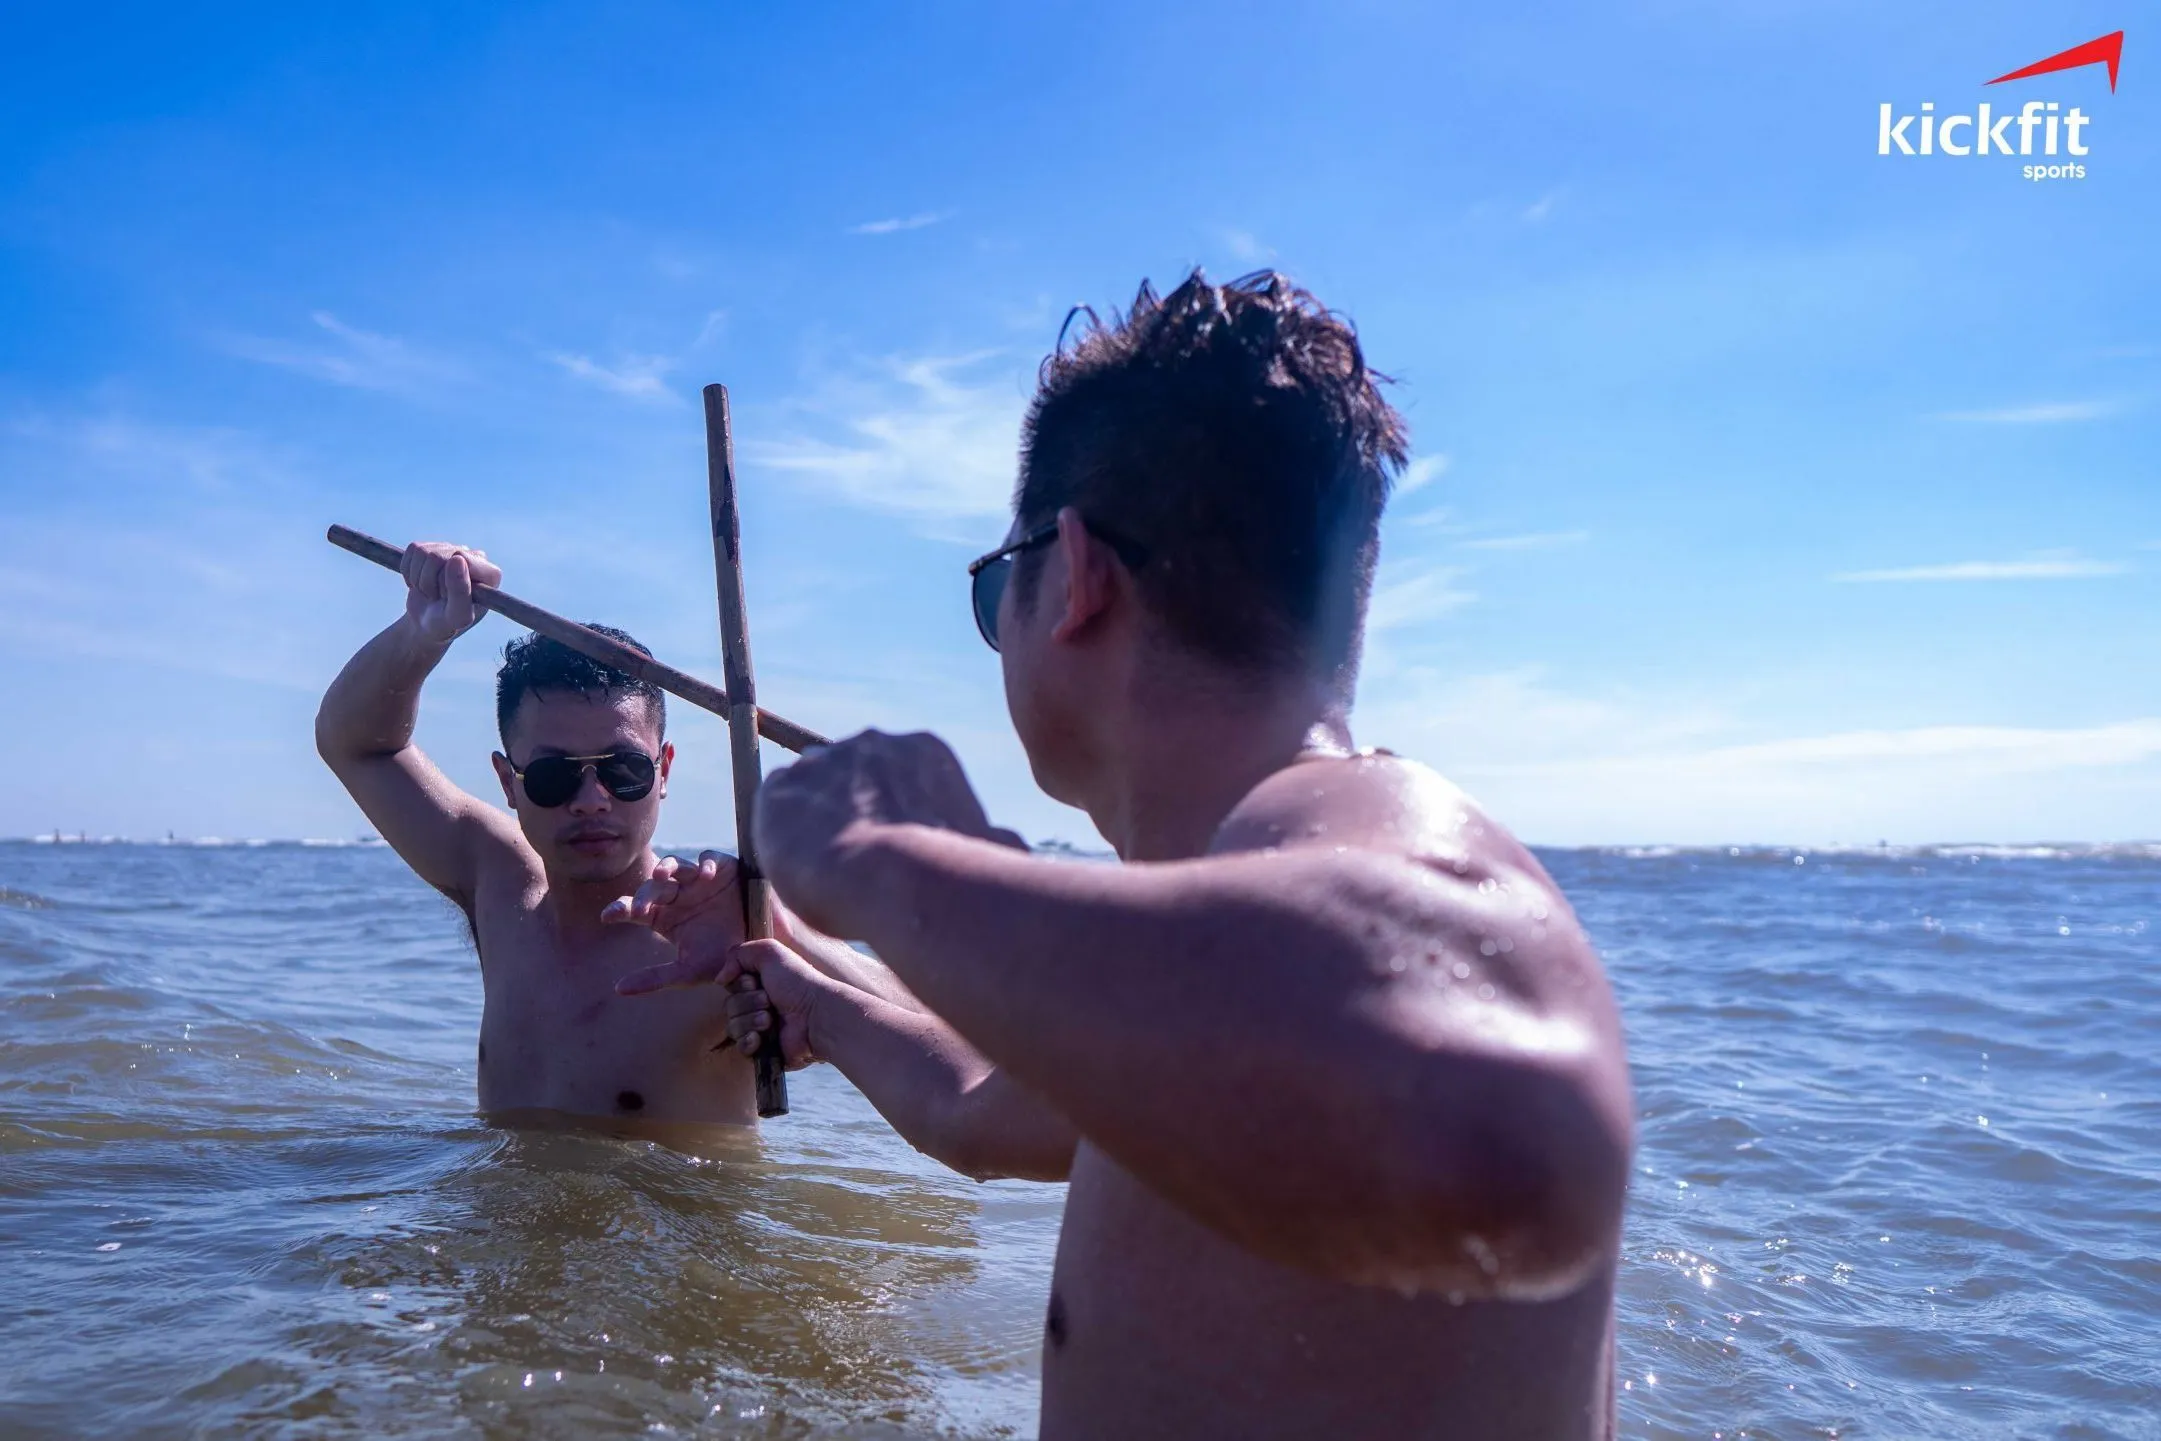 Võ gậy Arnis Philippines – Nghệ thuật chiến đấu bằng cây gậy ngắn